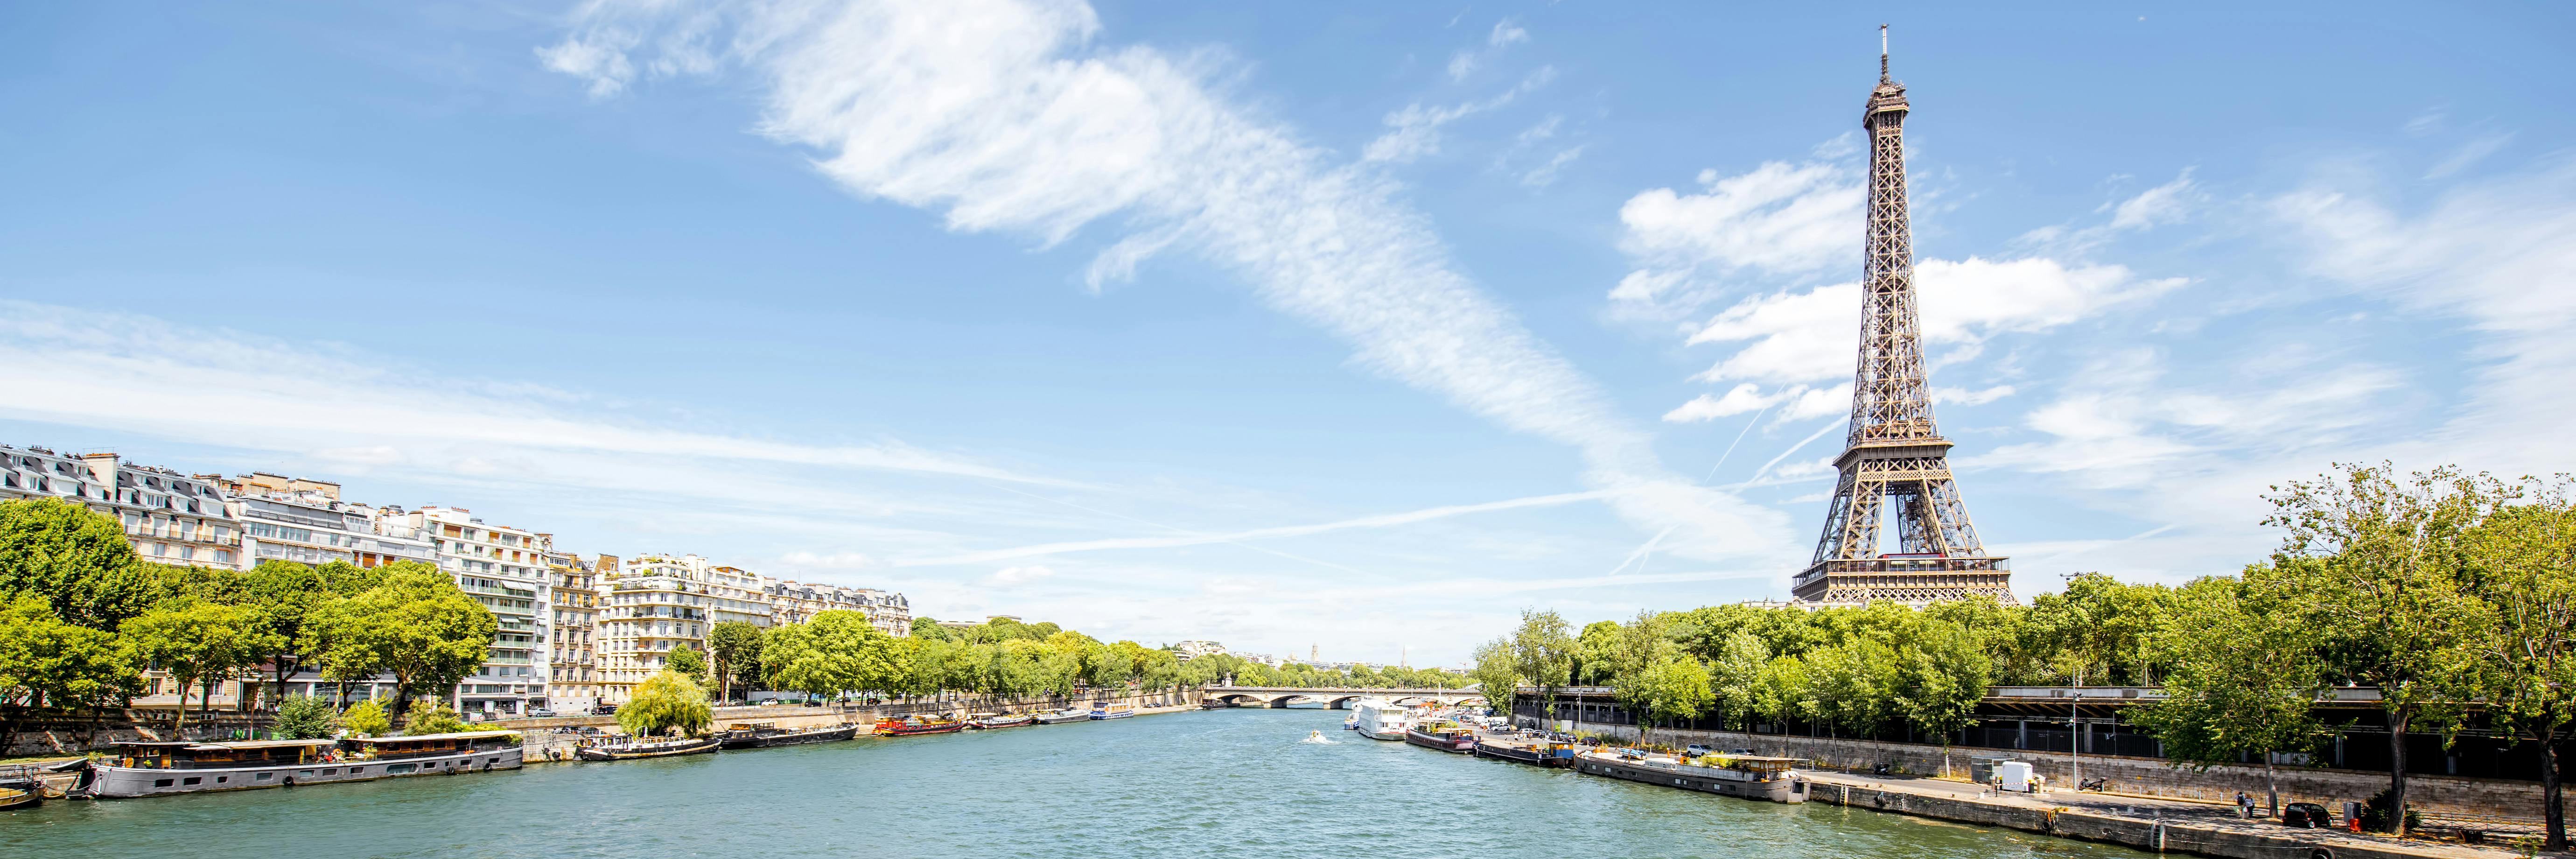 Escape Tour zelfgeleide, interactieve stadsuitdaging in Parijs